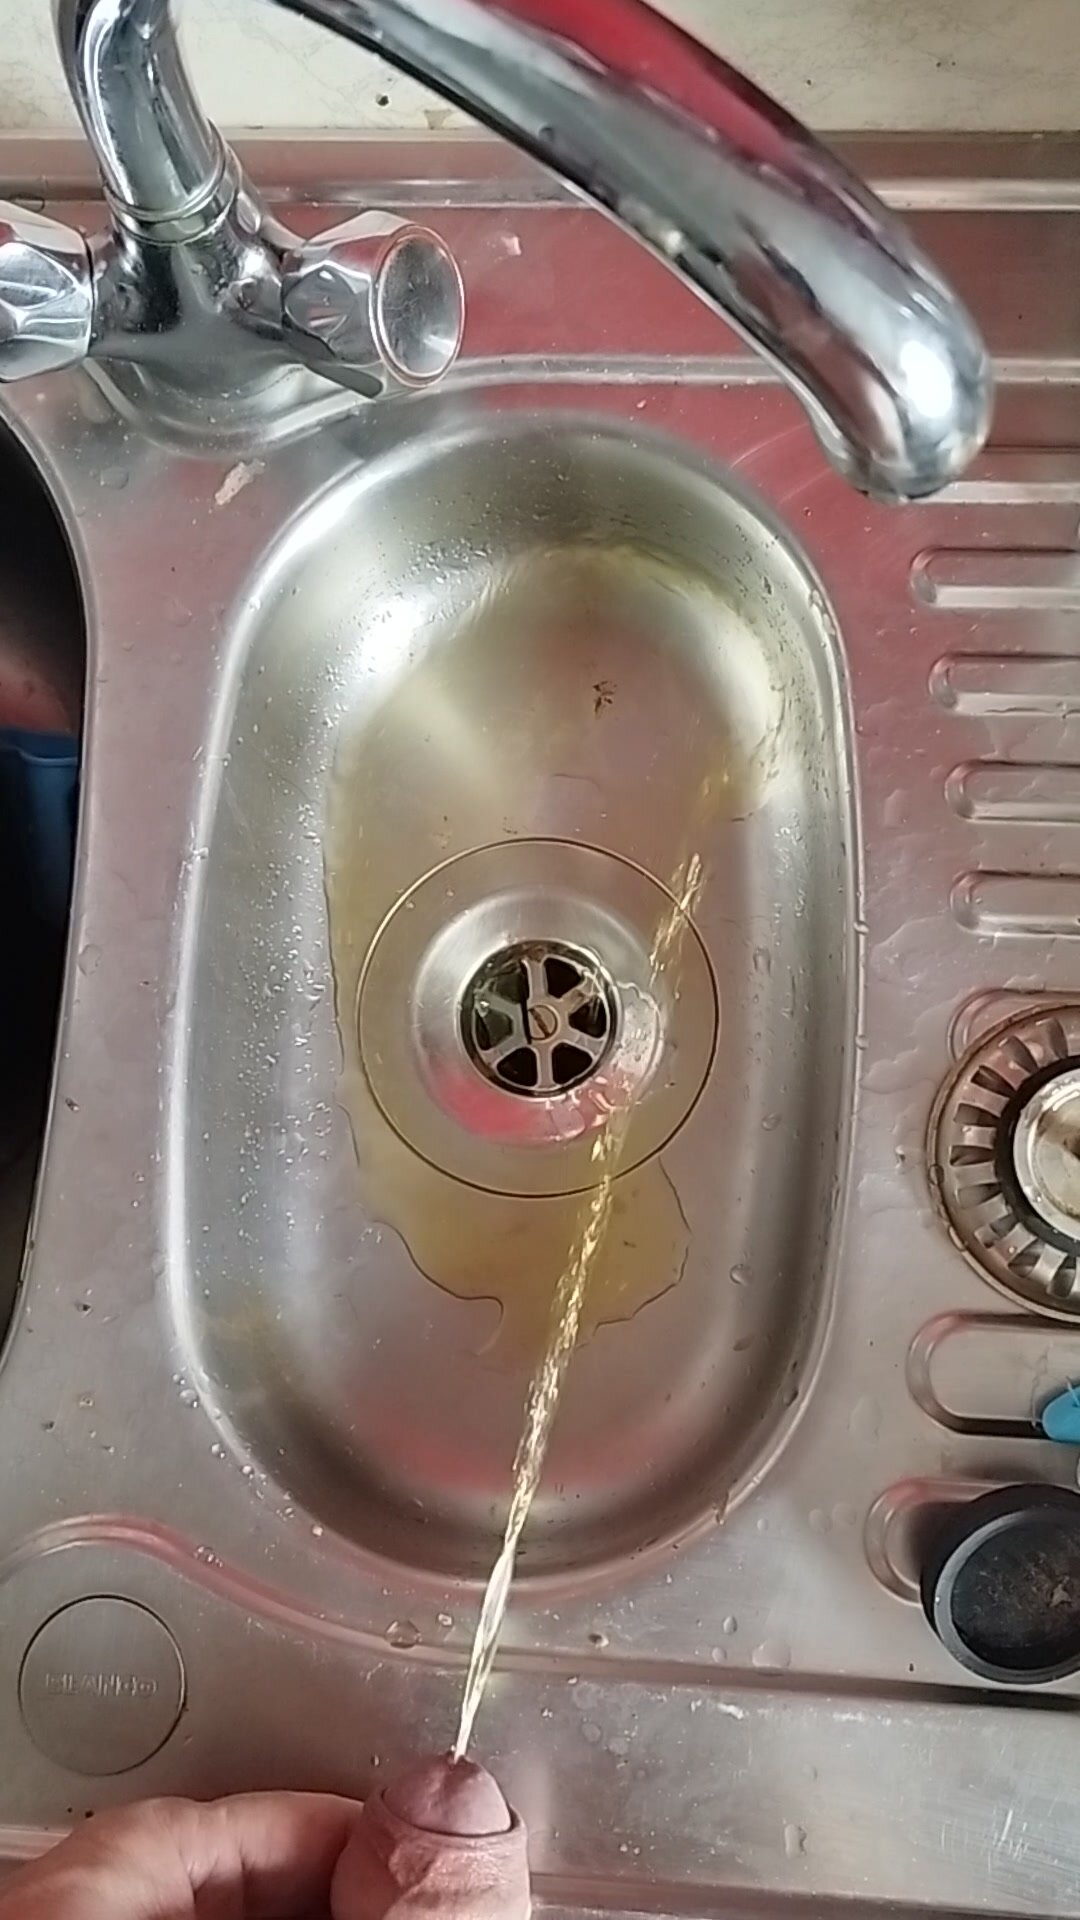 Morning dark yellow pee in the sink